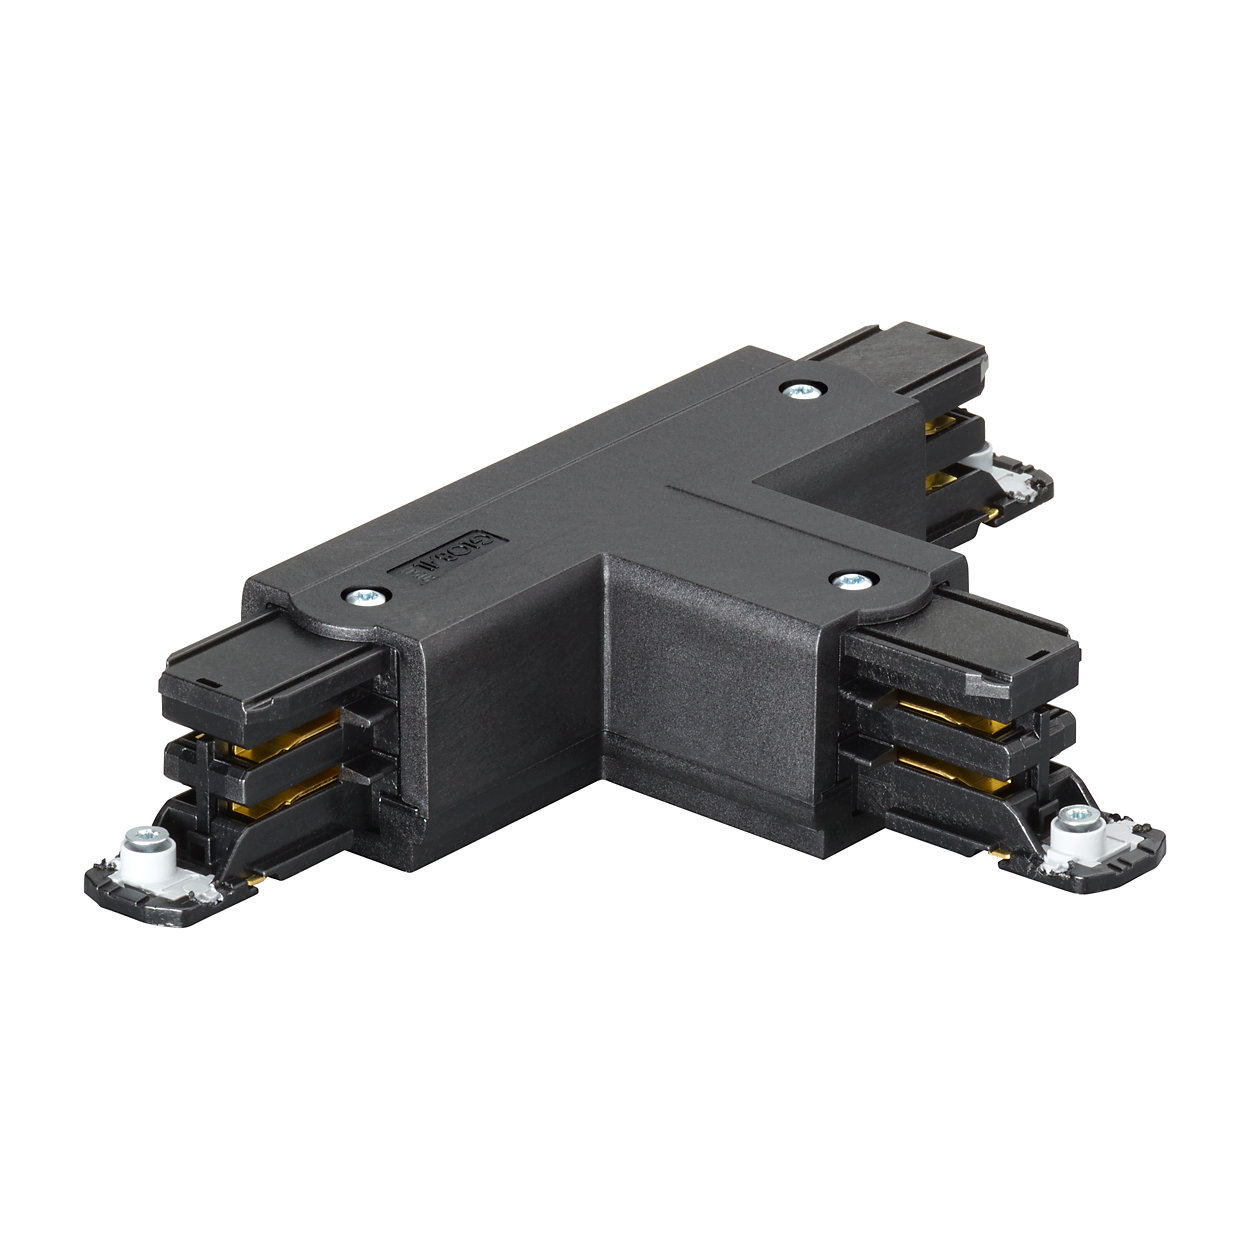 Система 3-контурного квадратного шинопровода RCS750 — гибкая и многофункциональная